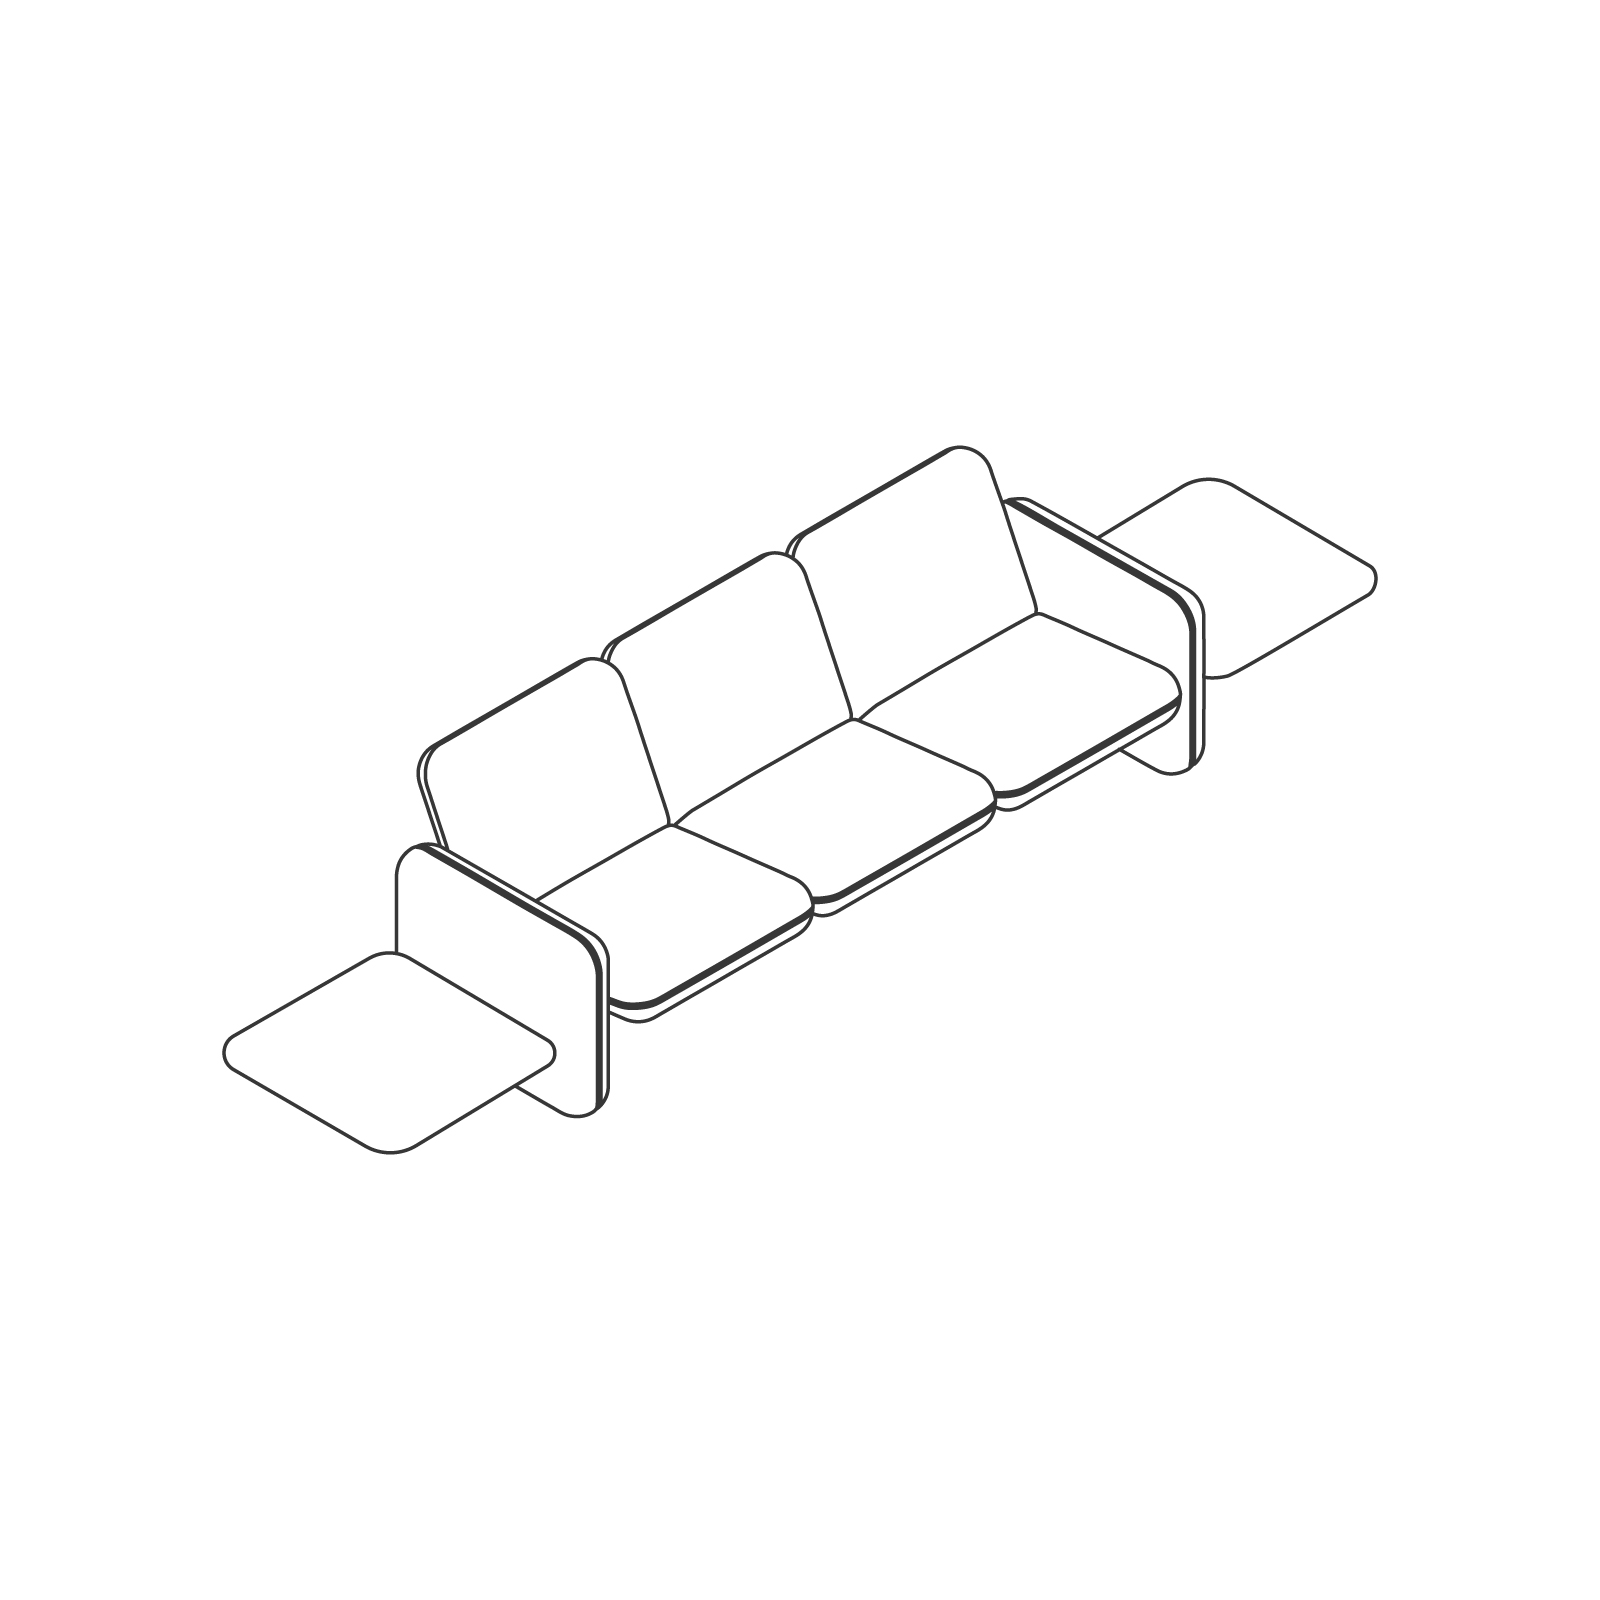 Dibujo en líneas - Conjunto de sofás modulares Wilkes – Mesa a la izquierda – 3 asientos – Mesa a la derecha